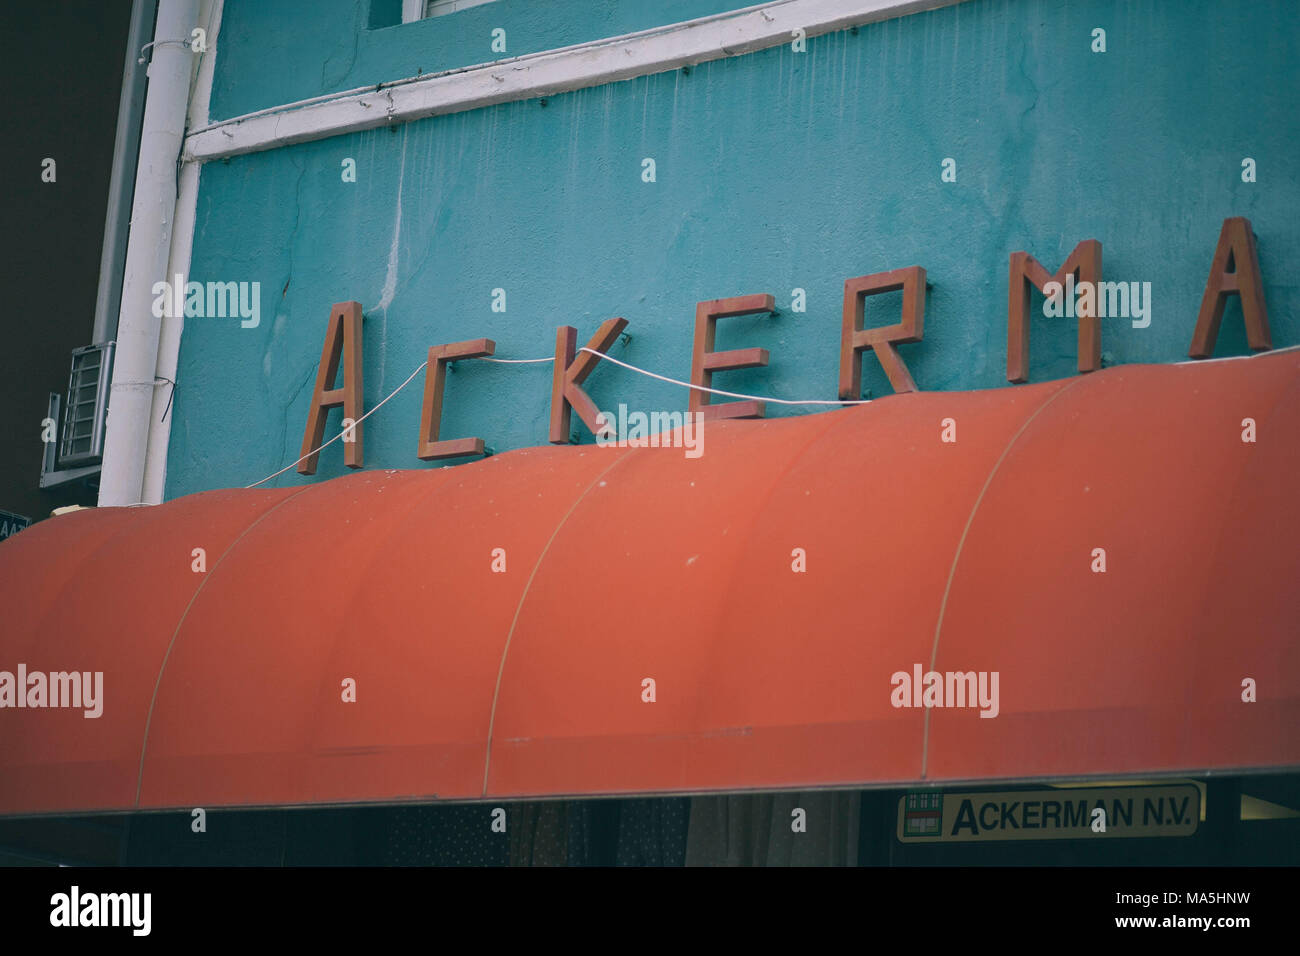 Ackerman anmelden Metall Typografie in orange Farbe auf willemstad, curazao Insel Stockfoto